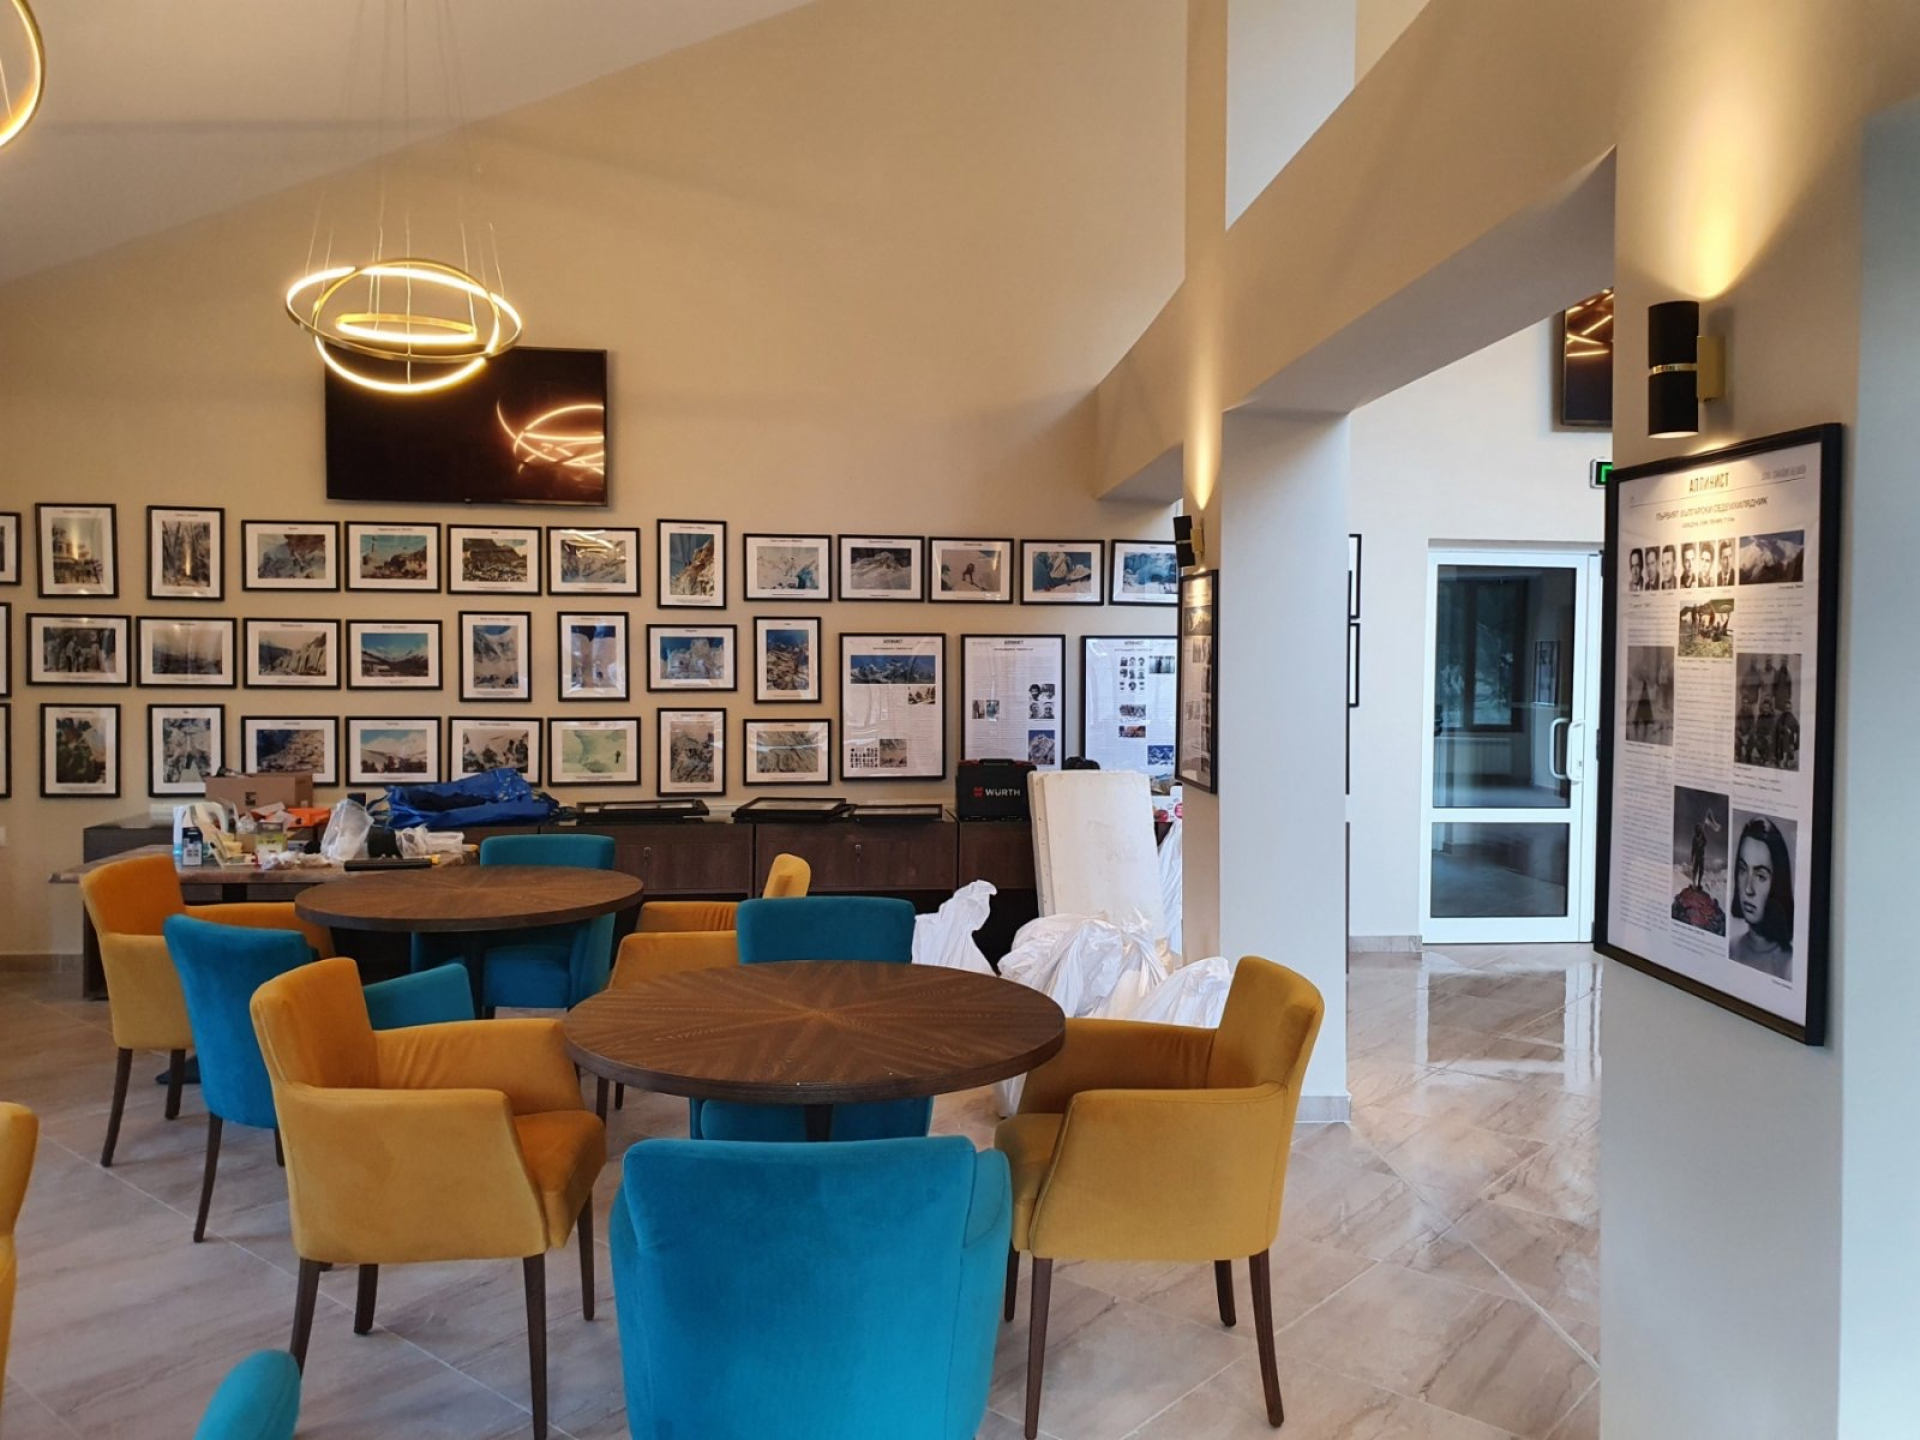 Инвестициите в курорта Мальовица продължават. През декември отваря новият хотел Алпинист с лоби бар, представящ историята на българския алпинизъм